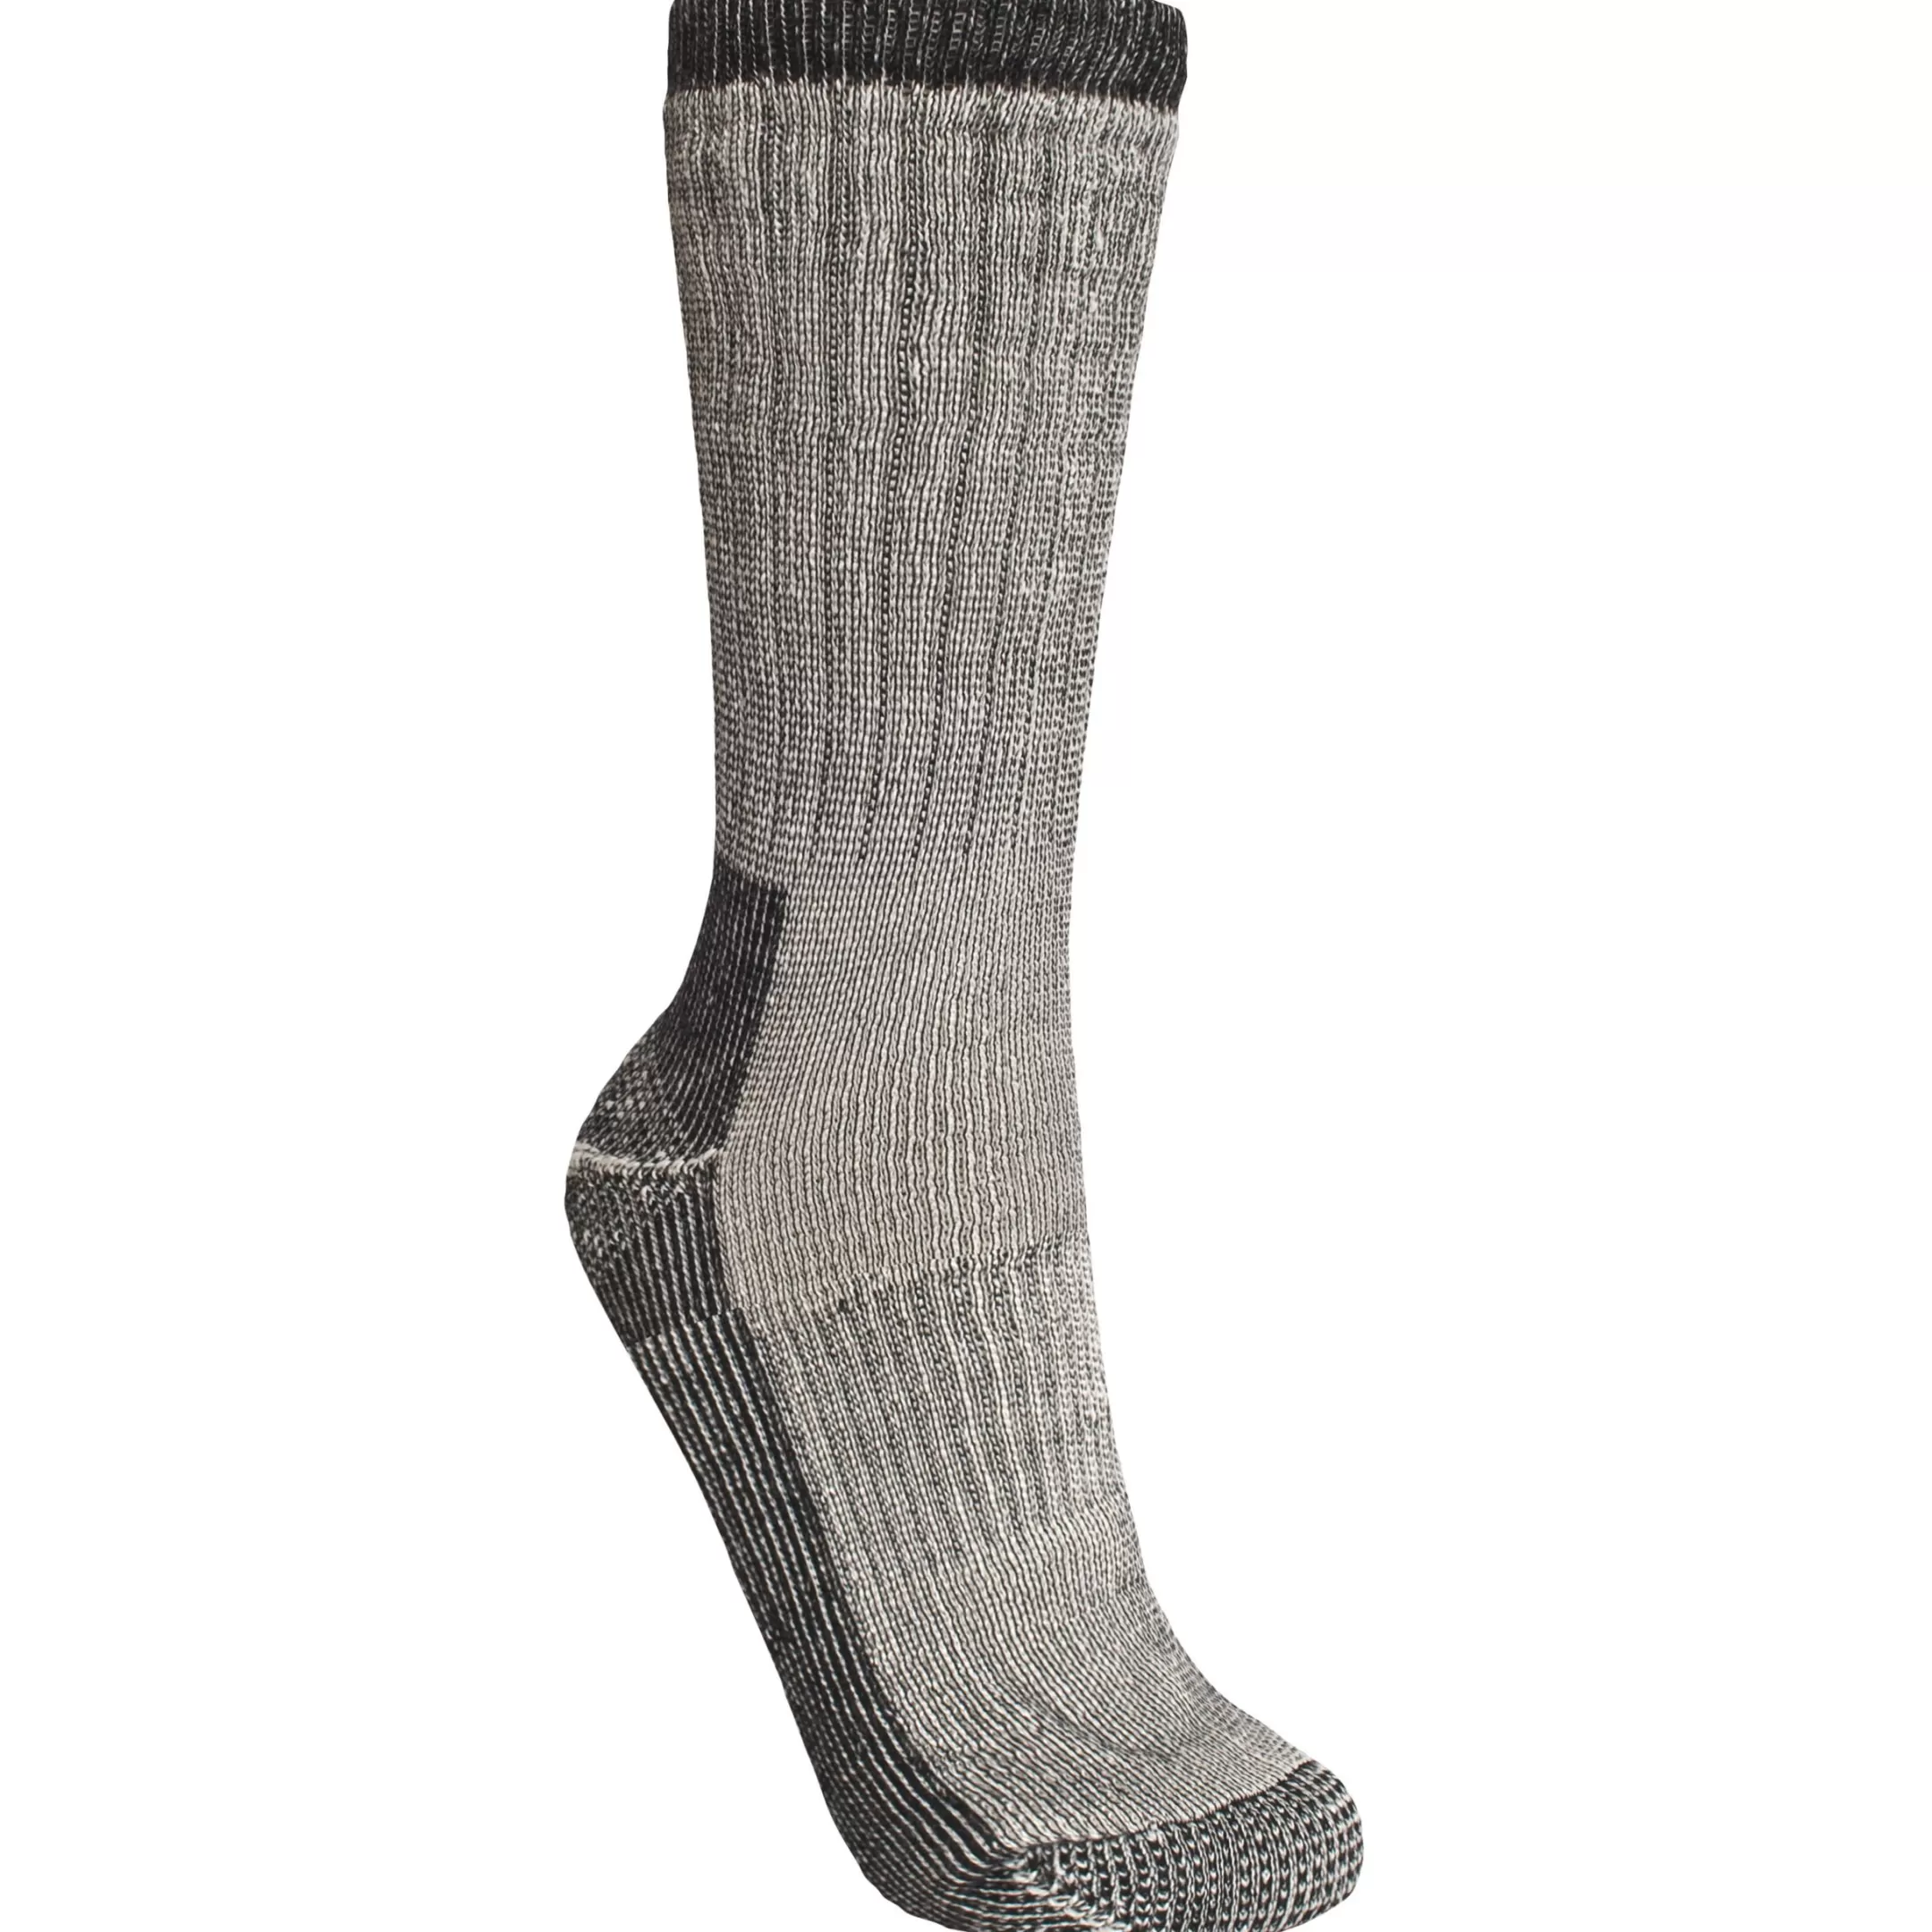 Men's Merino Wool Hiking Socks Stroller | Trespass Online